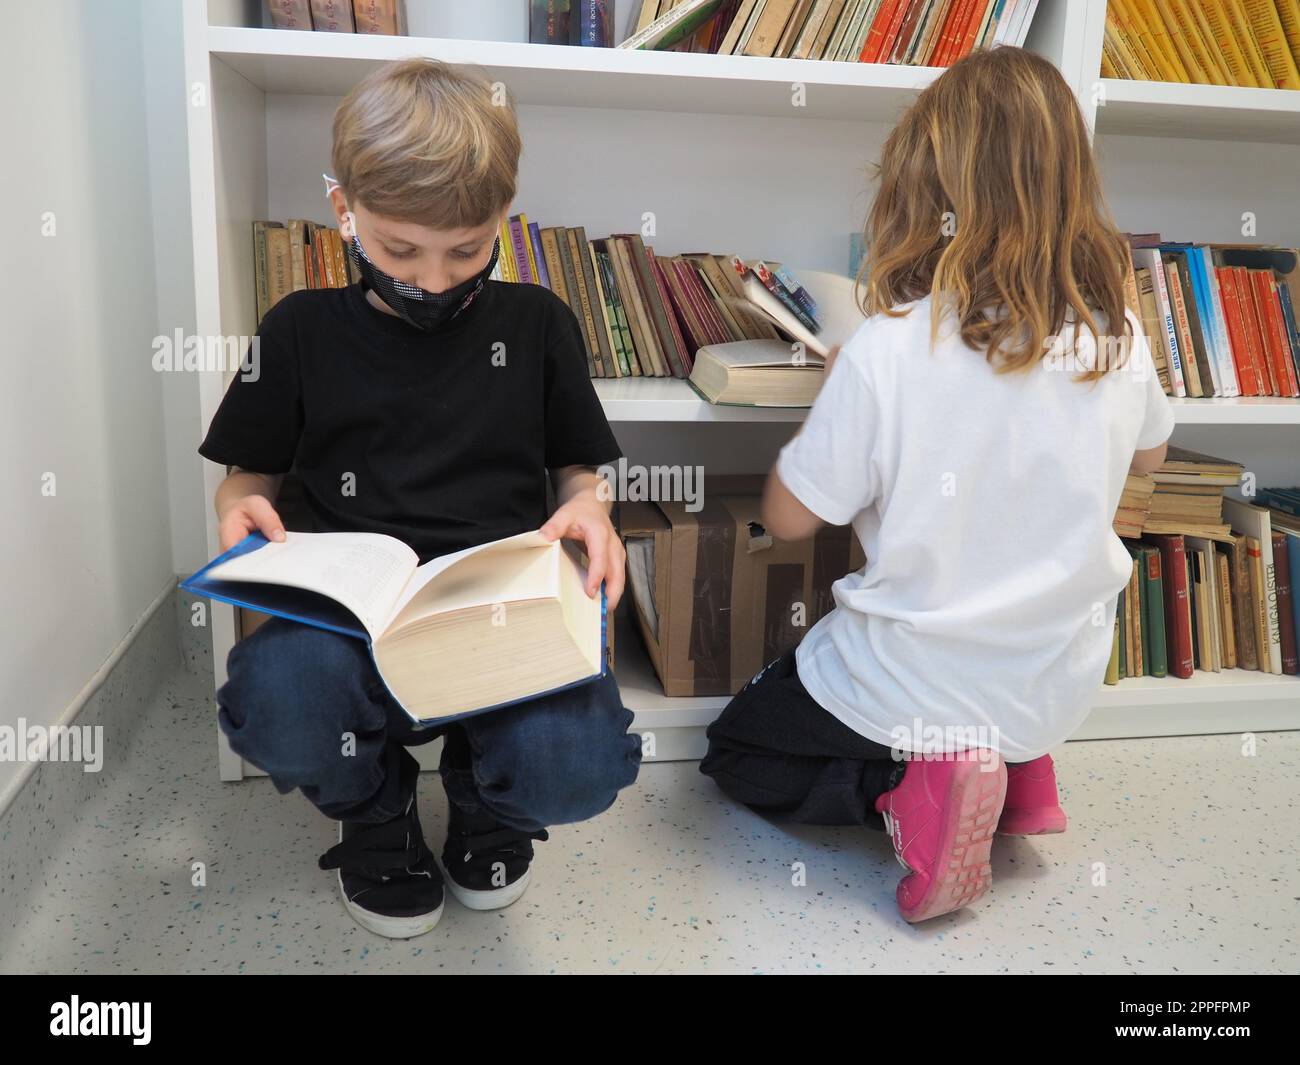 Sremska Mitrovica, Serbia, 15 maggio 2021 bambini nella biblioteca scolastica. Un ragazzo e una ragazza cercano e sfogliano i libri nel rack della biblioteca. Il ragazzo sta leggendo un libro molto denso. A scuola. Gli adolescenti studiano Foto Stock